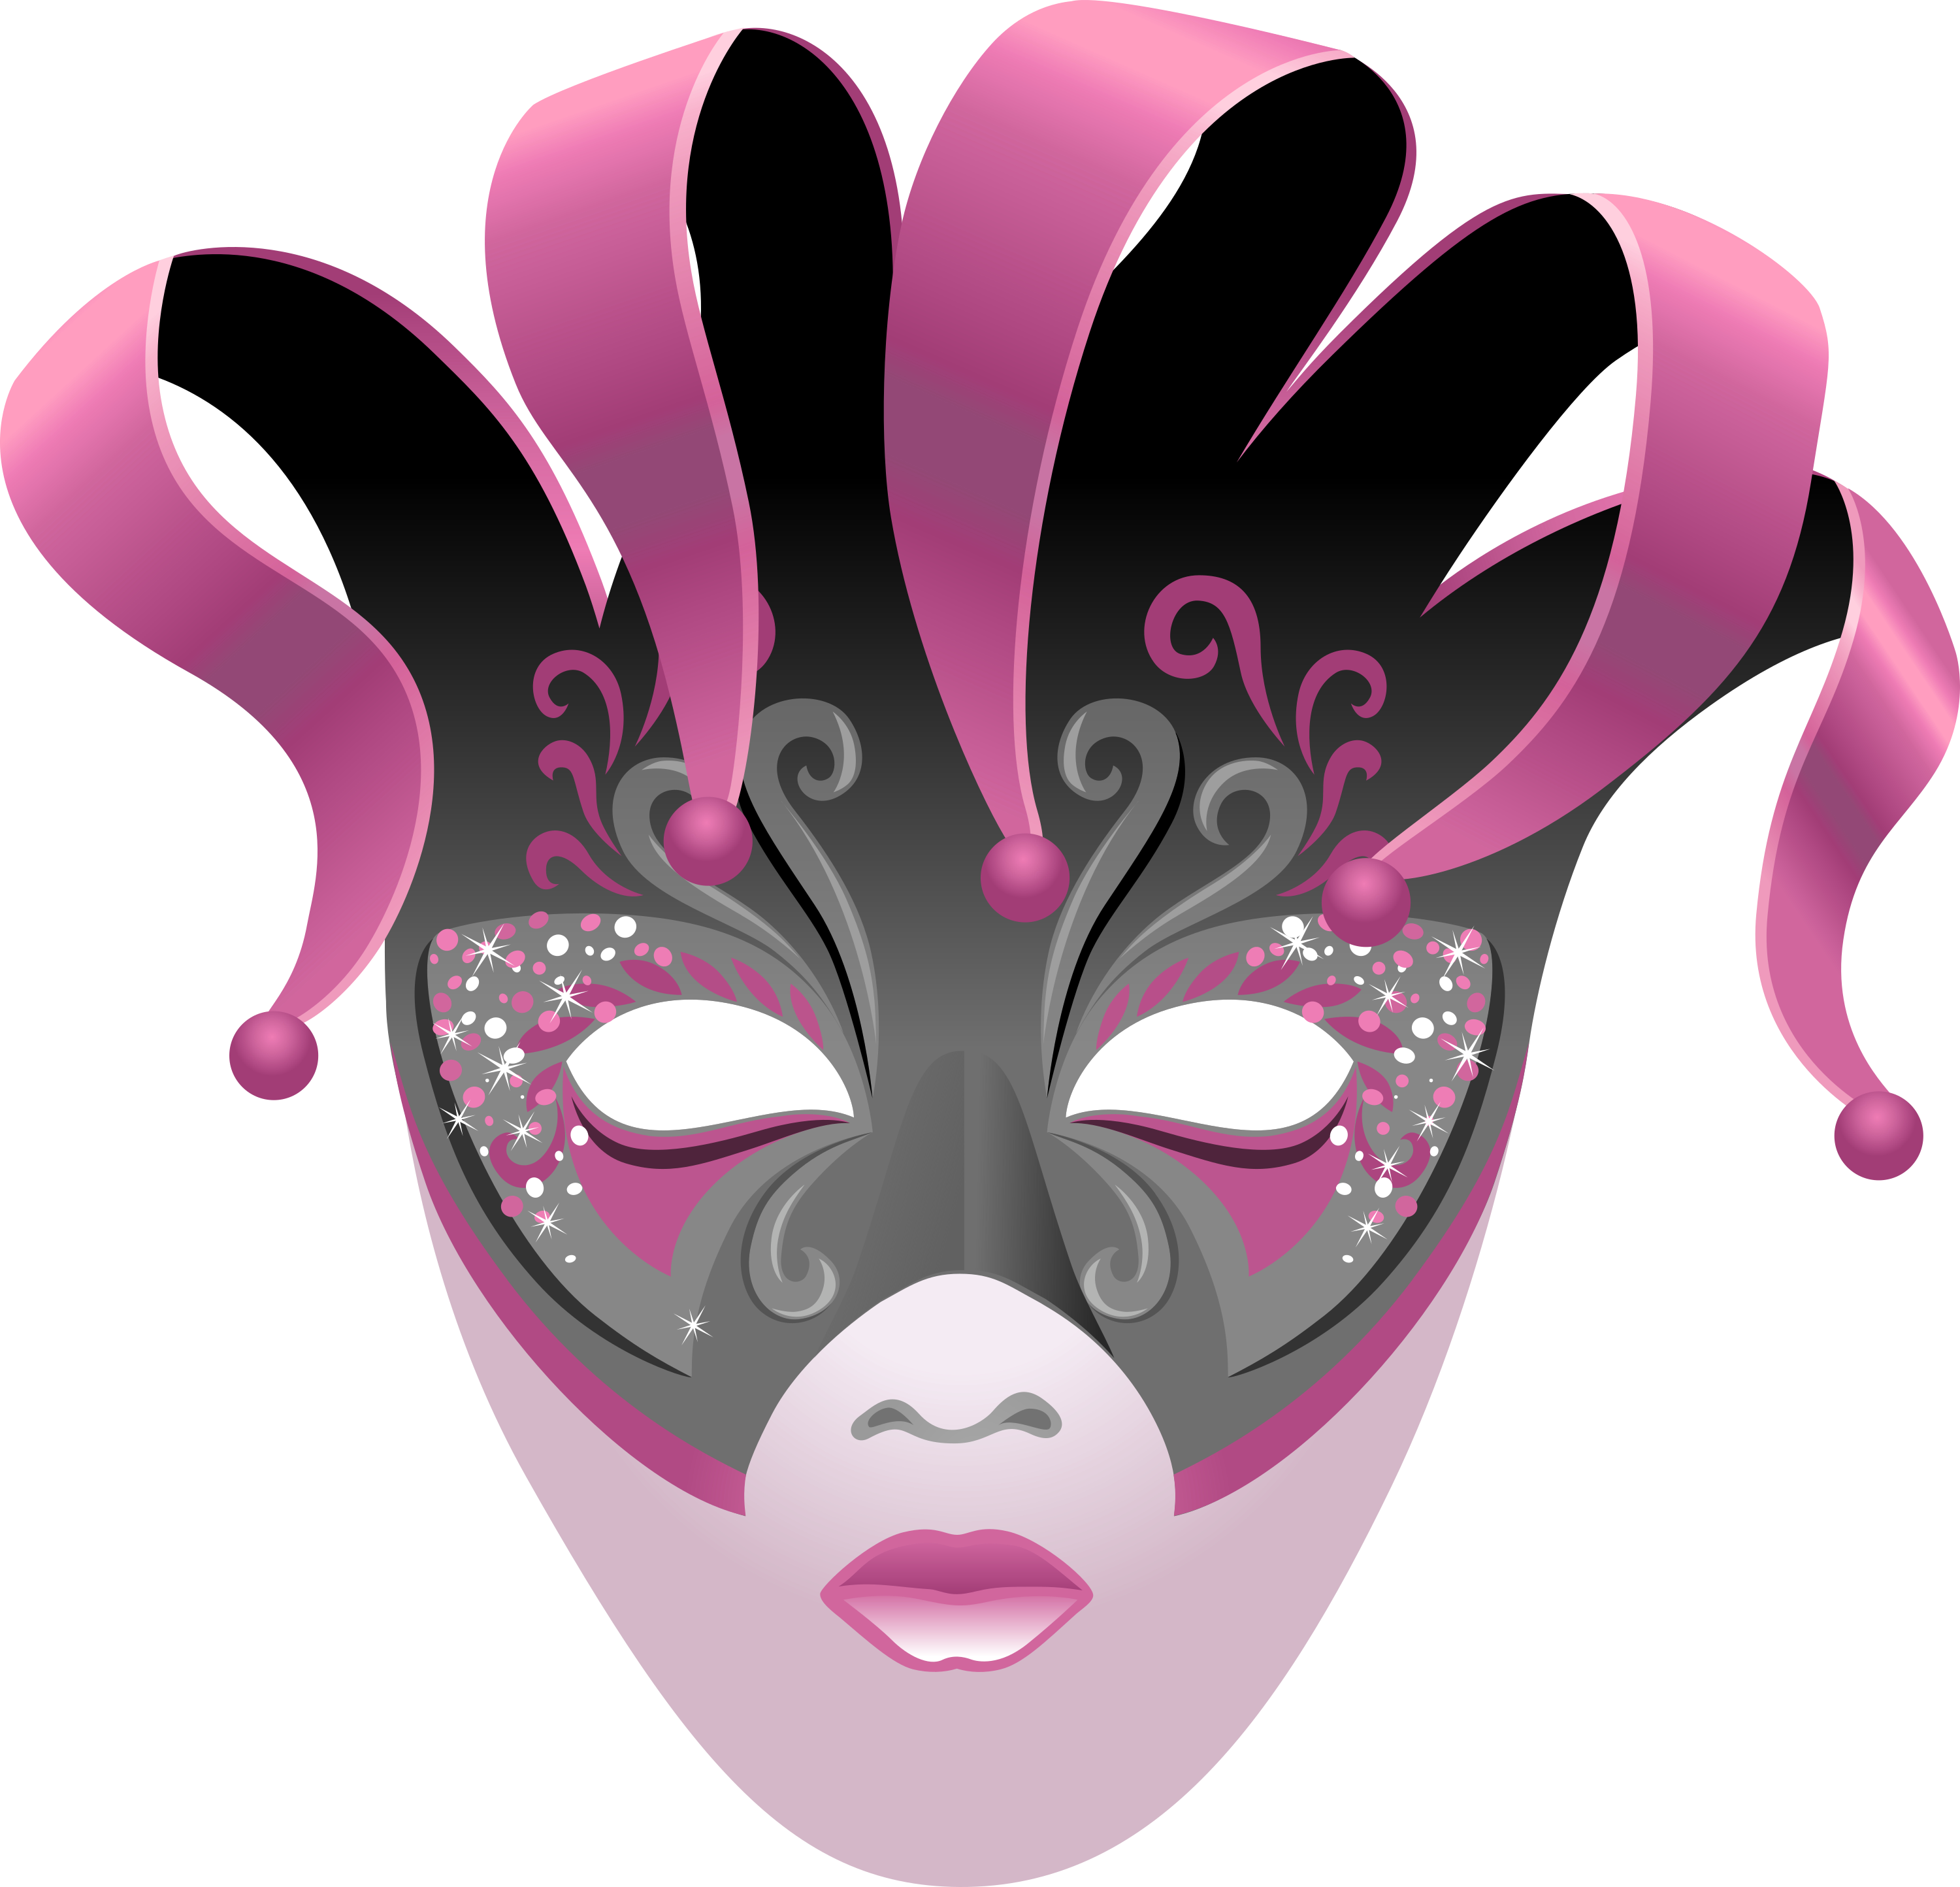 Mascara-colores-degradados-01-carnaval-2019 by Creaciones-Jean on DeviantArt